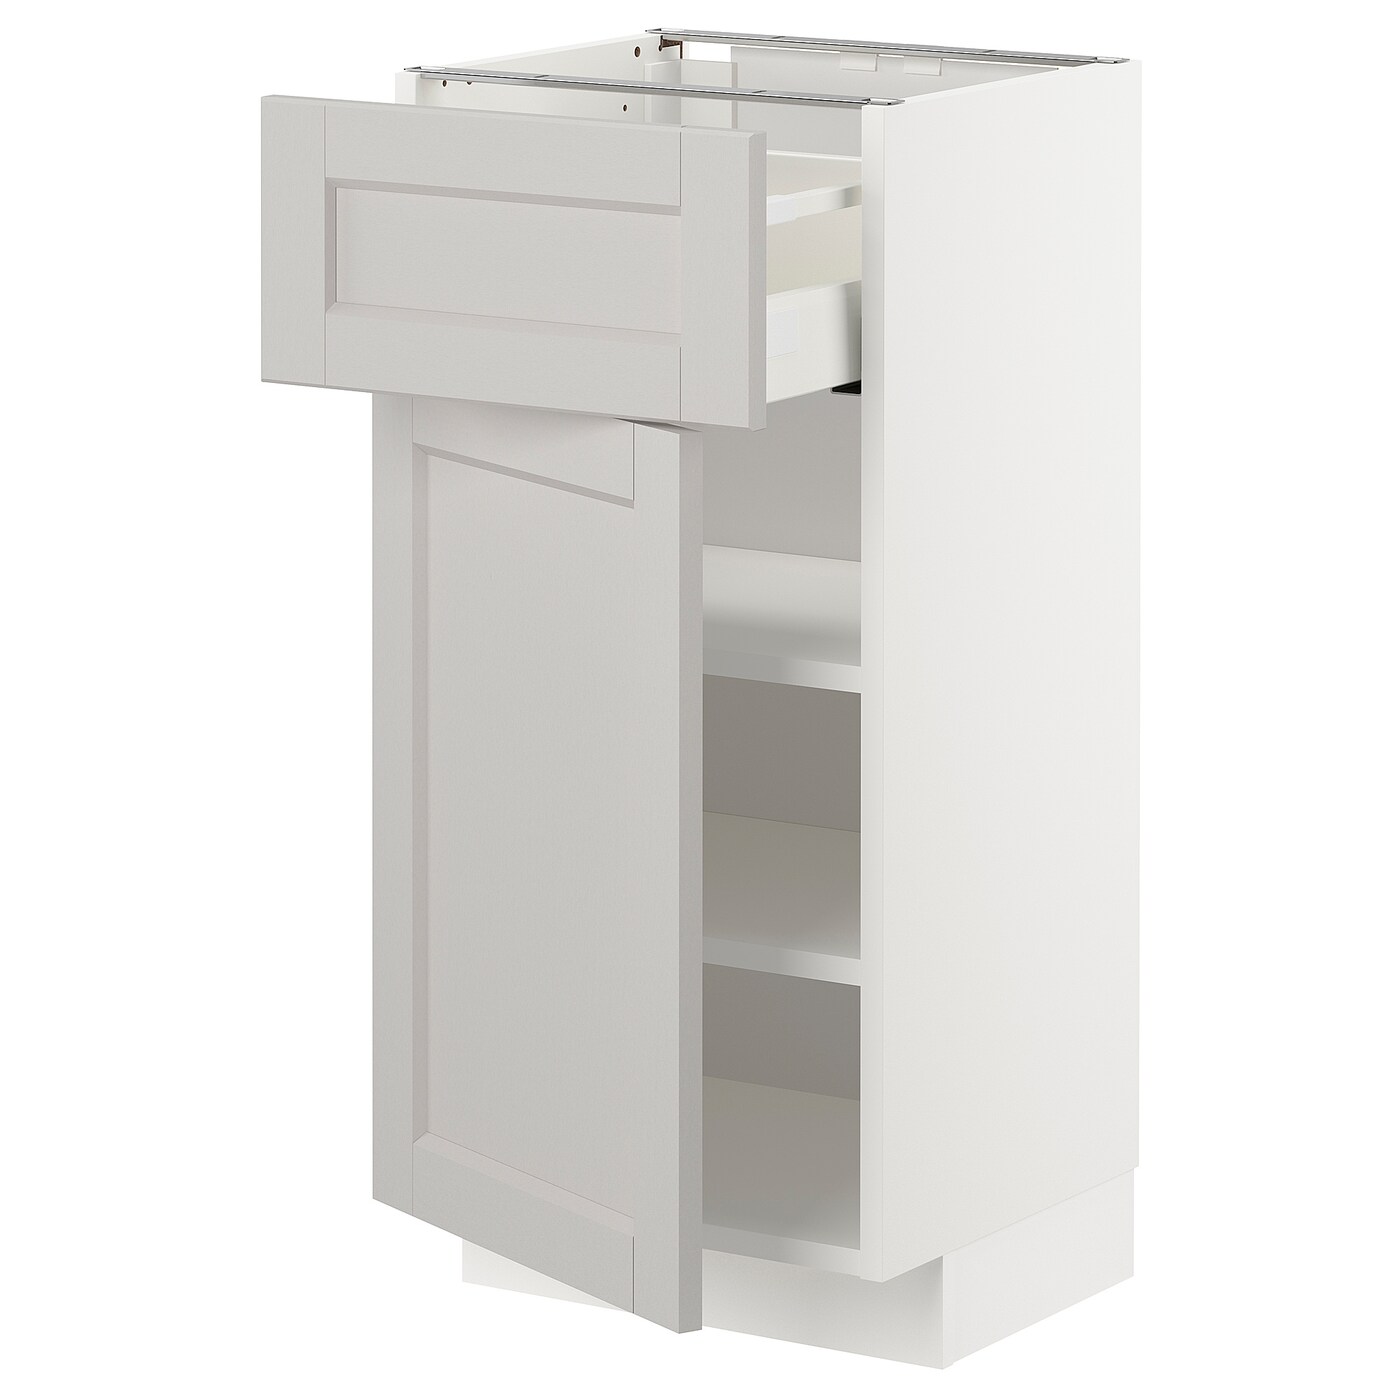 Напольный шкаф - IKEA METOD MAXIMERA, 88x39,5x40см, белый/светло-серый, МЕТОД МАКСИМЕРА ИКЕА